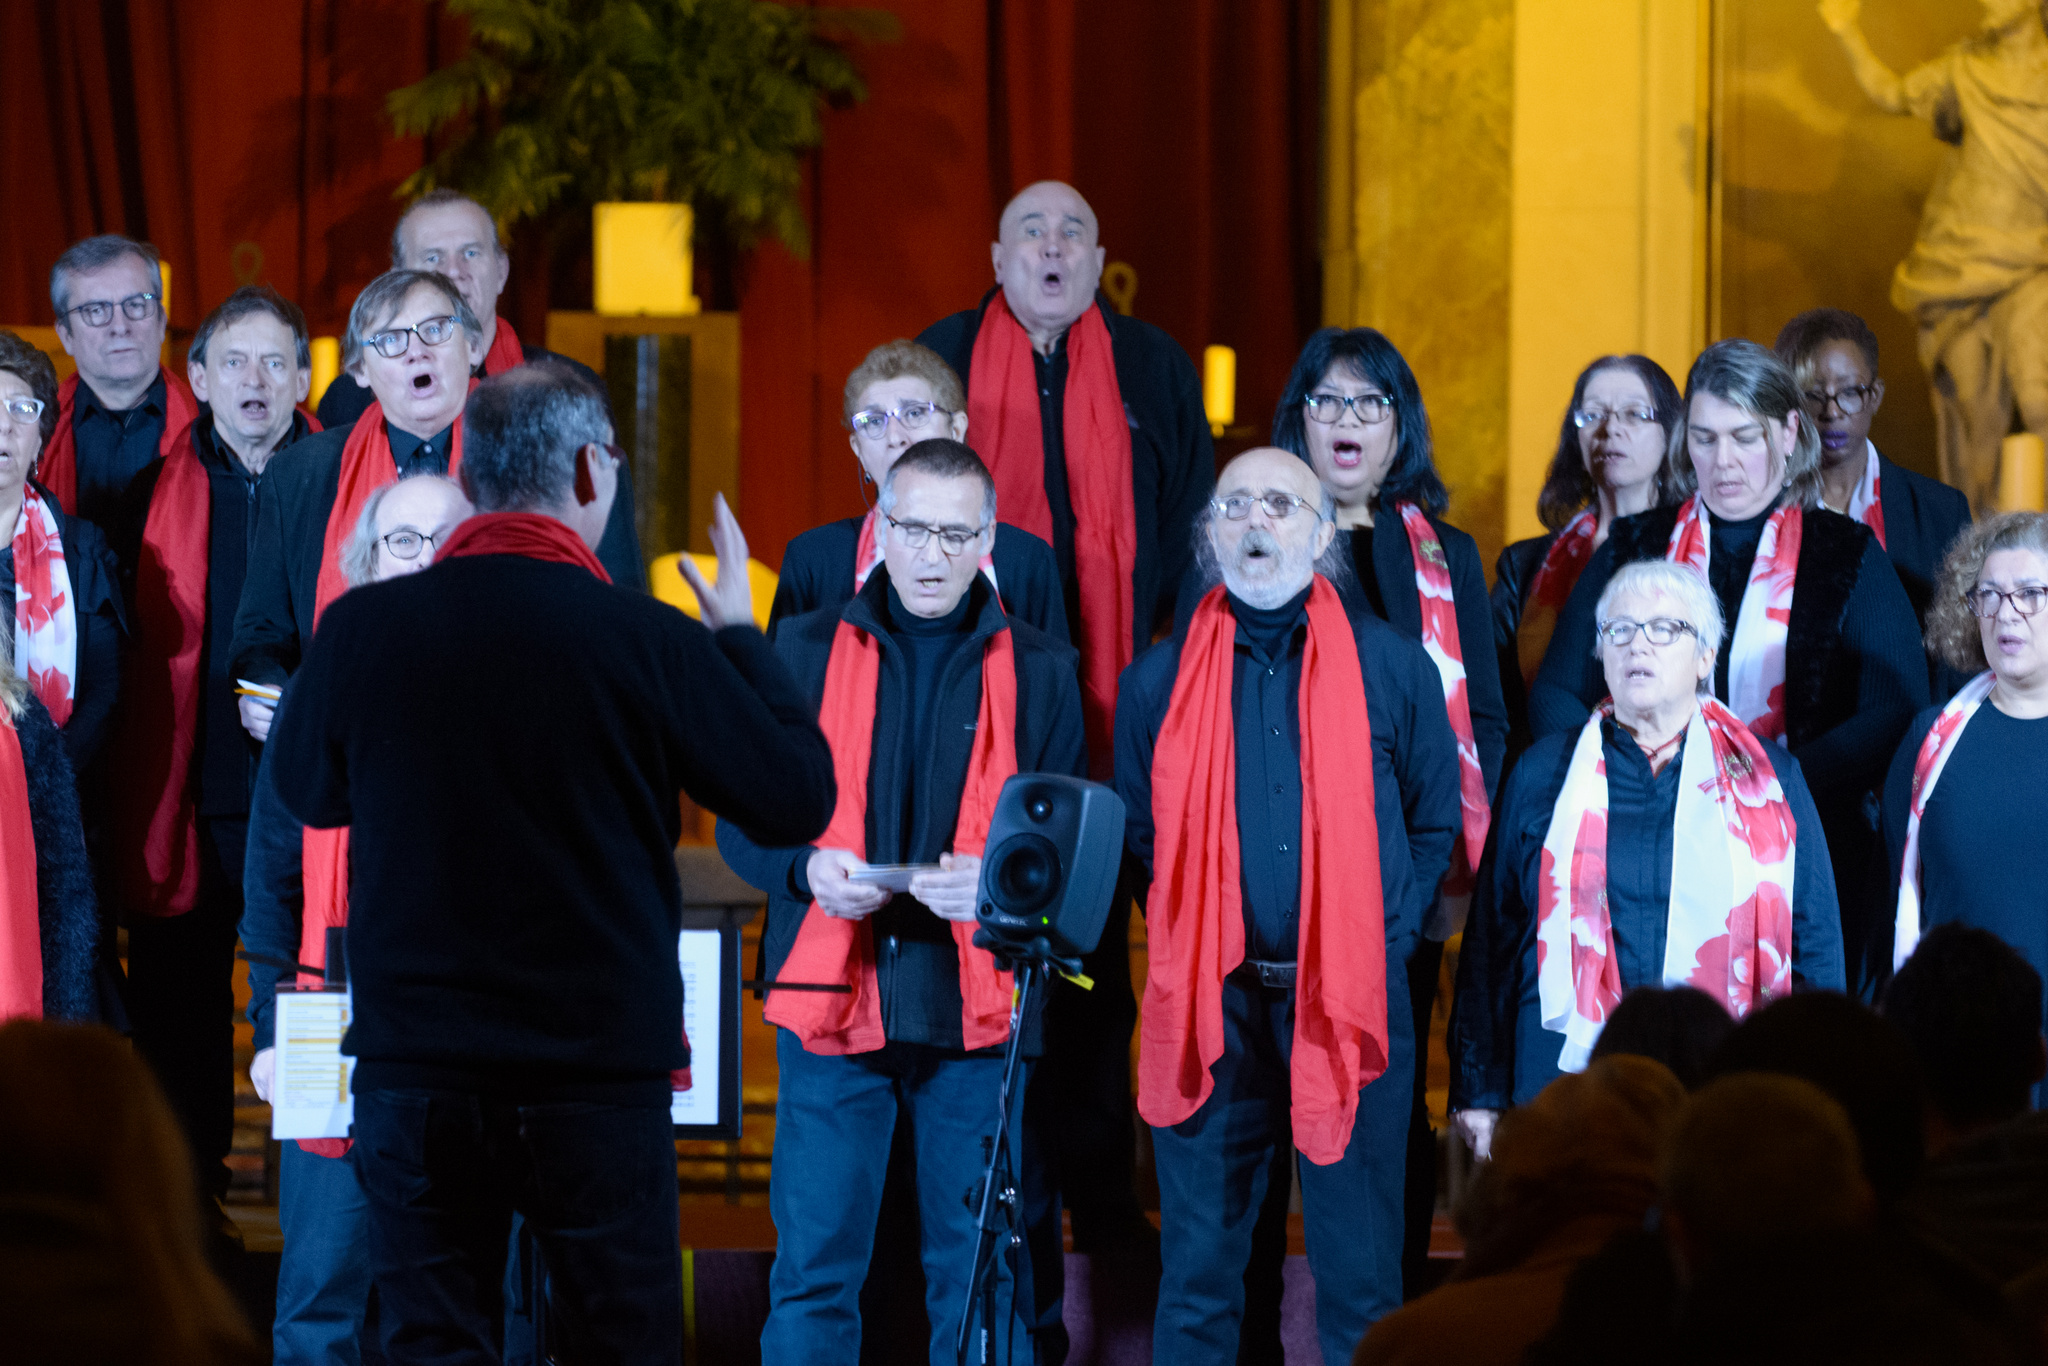 Concert "Noël des 4 coins du Monde" - Chorale Atout Choeur, Chorale Saint André - Cathédrale Saint-Louis-et-Saint-Nicolas de Choisy-le-Roi, 16 décembre 2017